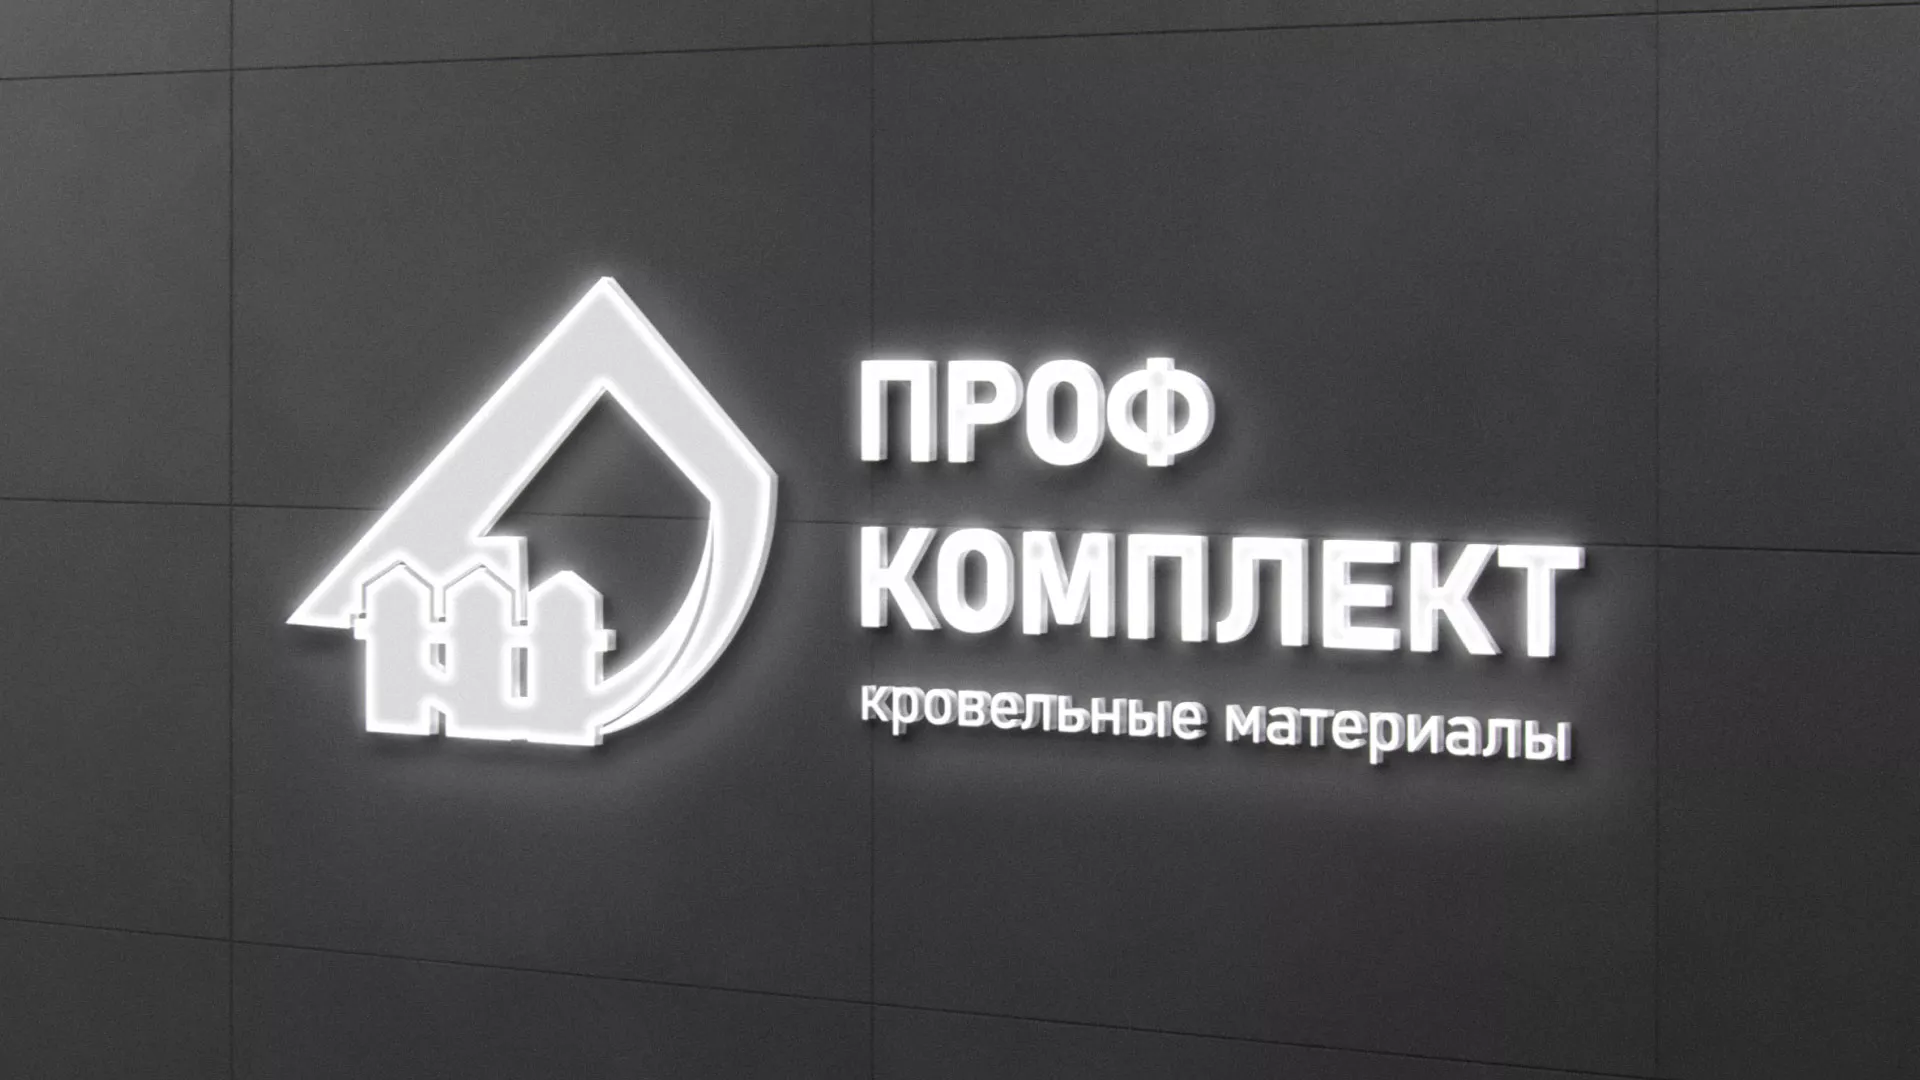 Разработка логотипа «Проф Комплект» в Дигоре